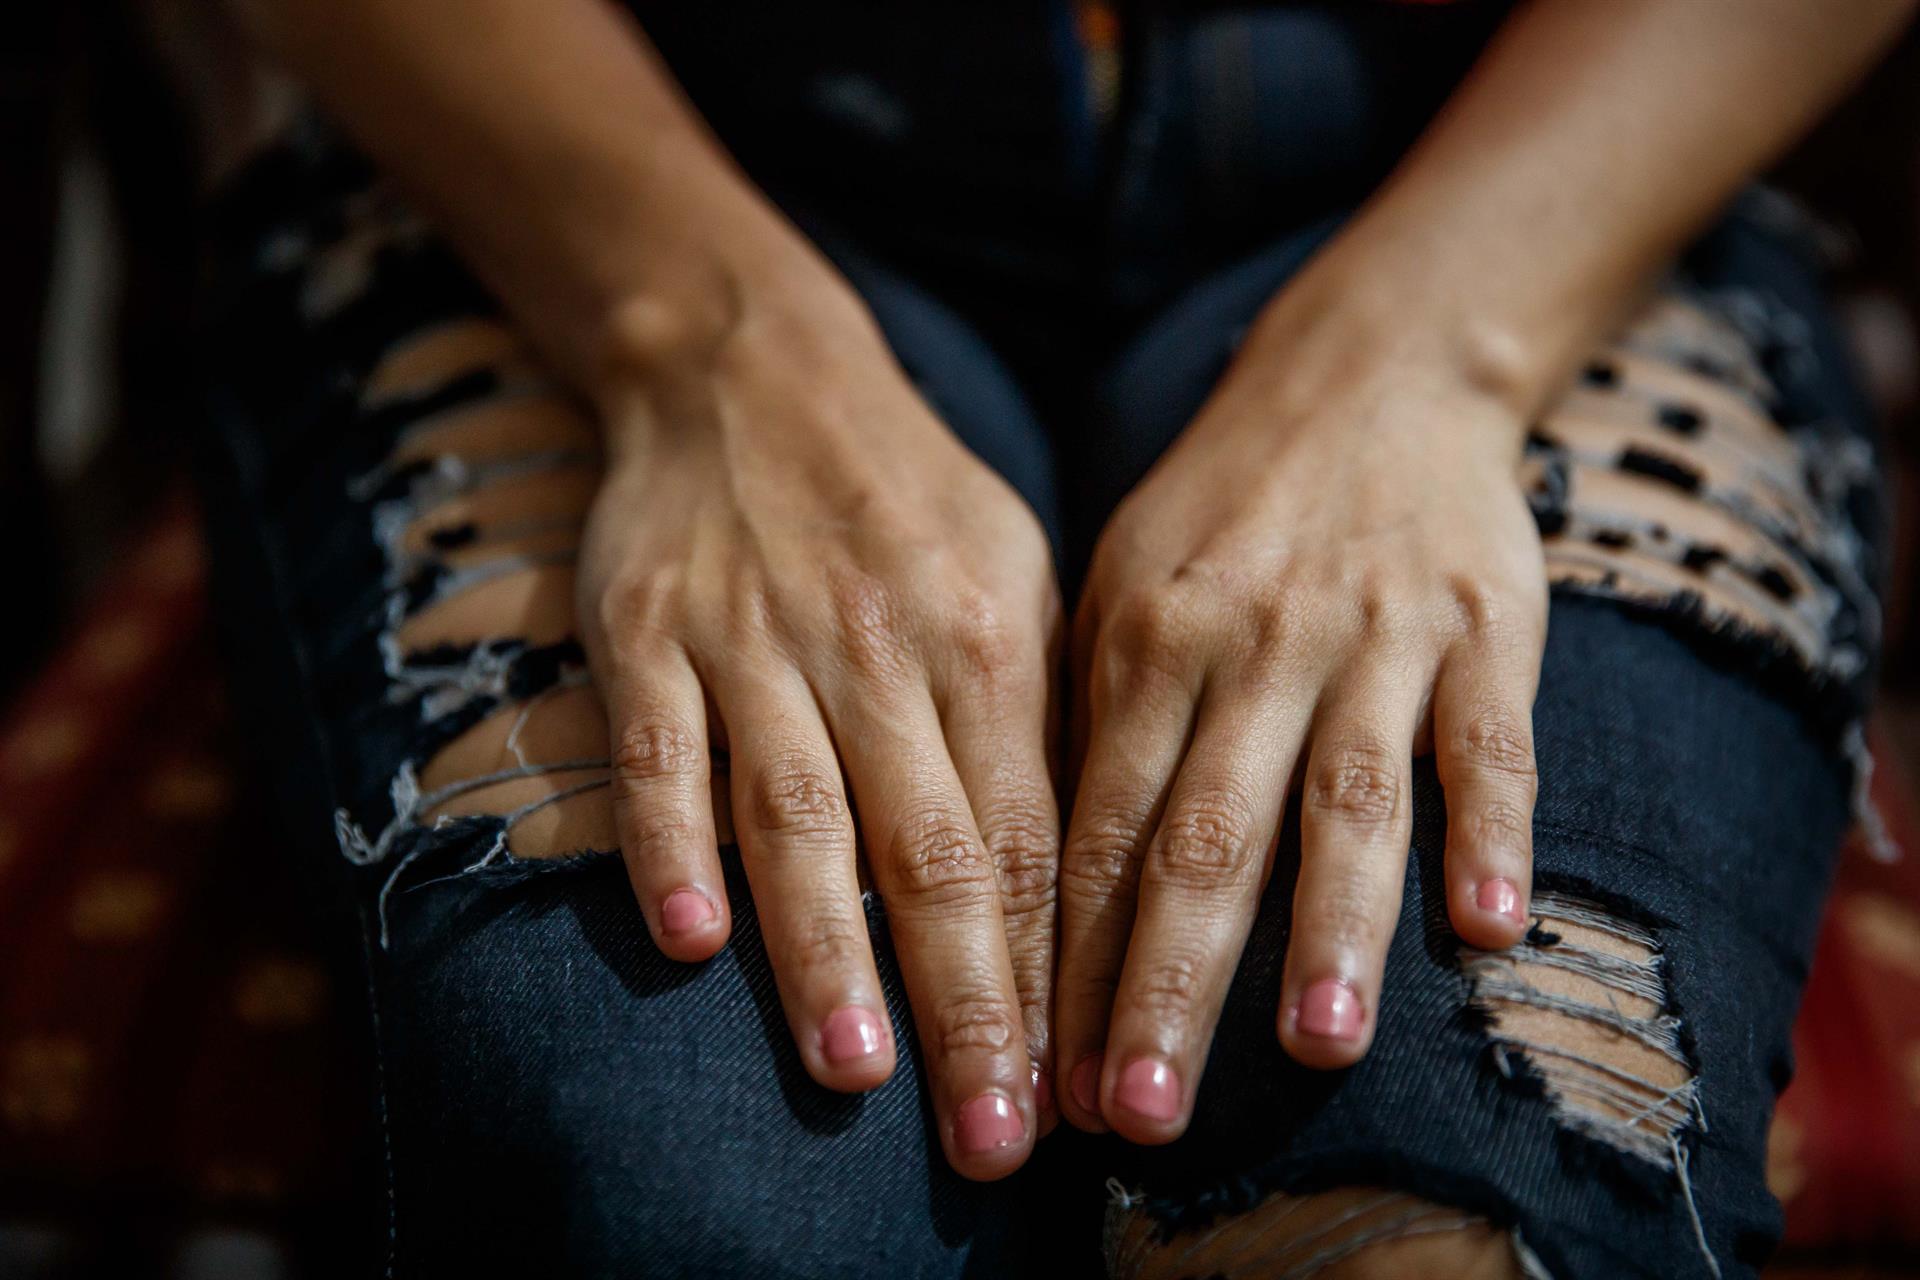 Mujeres venezolanas víctimas de violencia sin casa de abrigo para protegerse de agresores